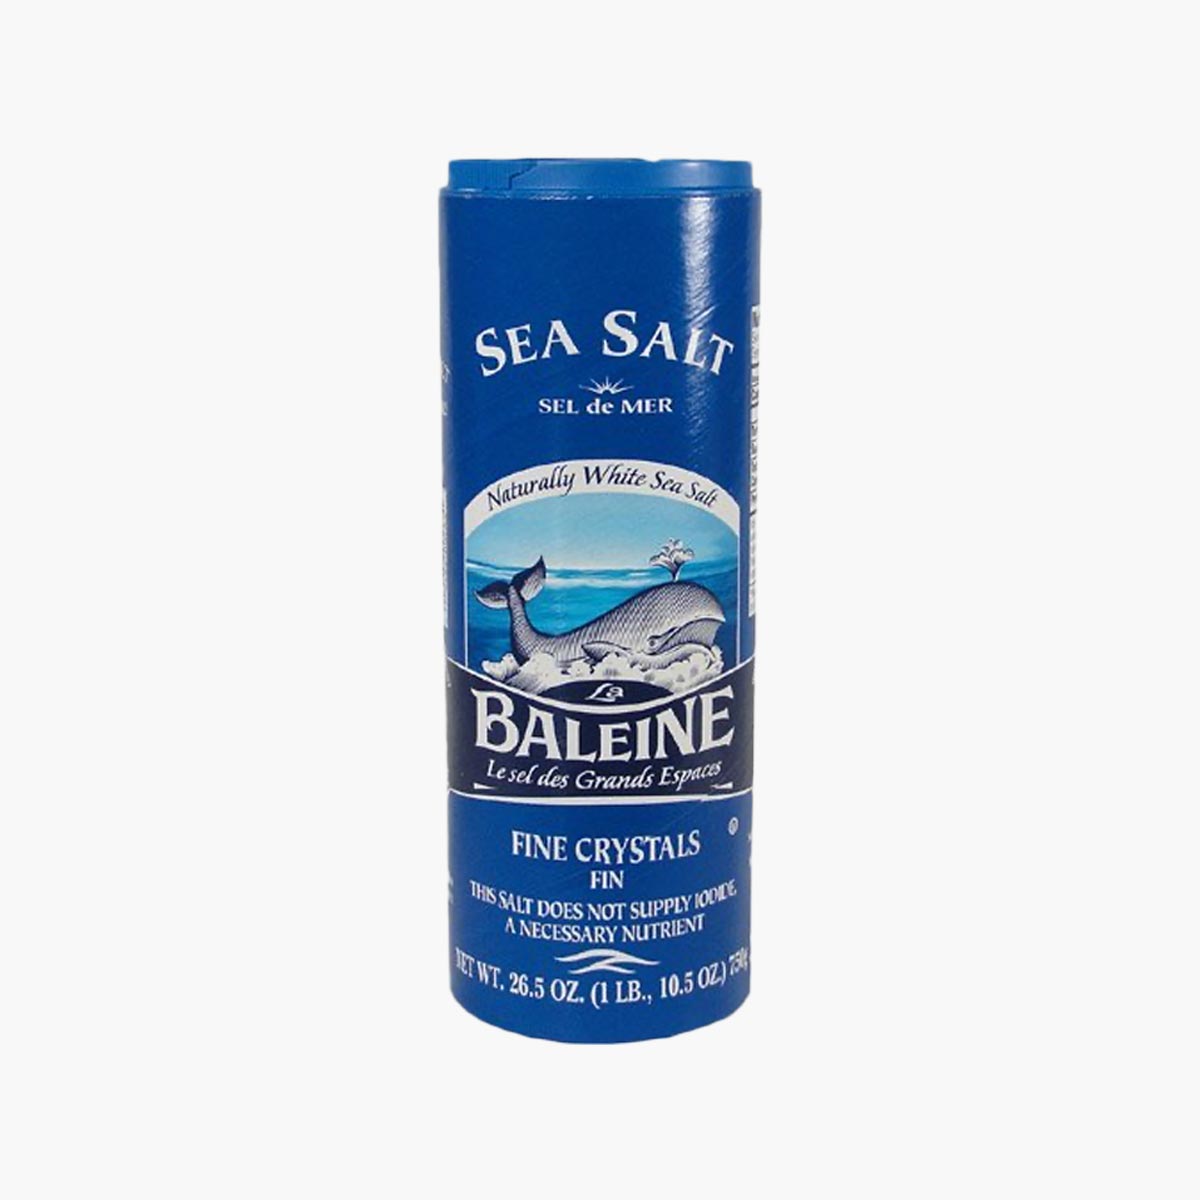 A container of Baleine fine sea salt.